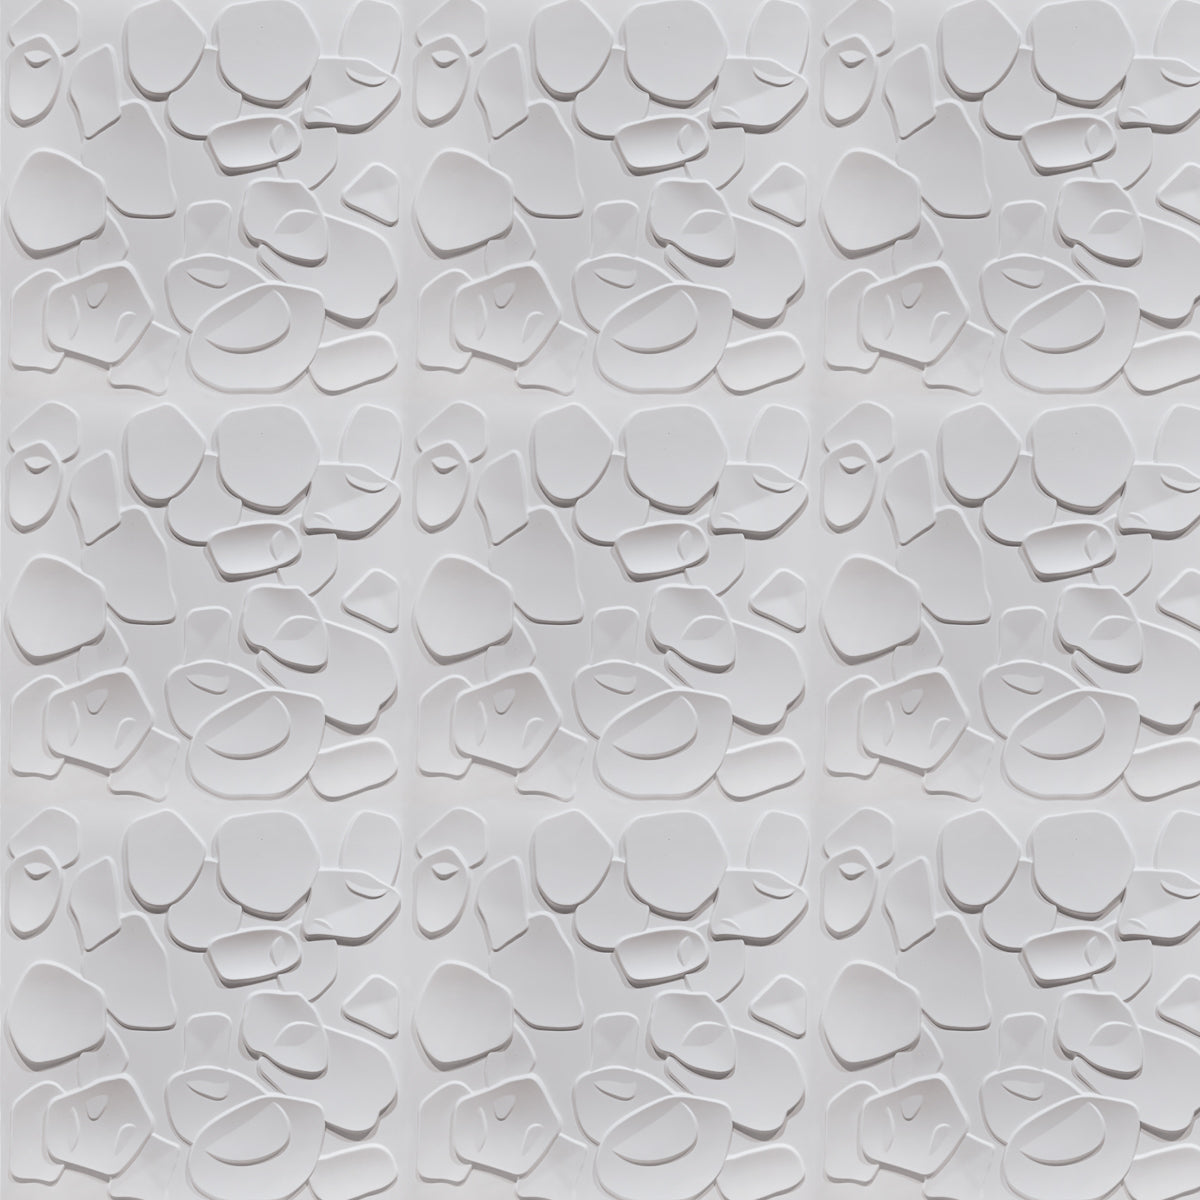 CORAL SEA bianco - Pannello parete in PVC a rilievo 3D - 50cmX50cm - 1 Pz - PlastiWood